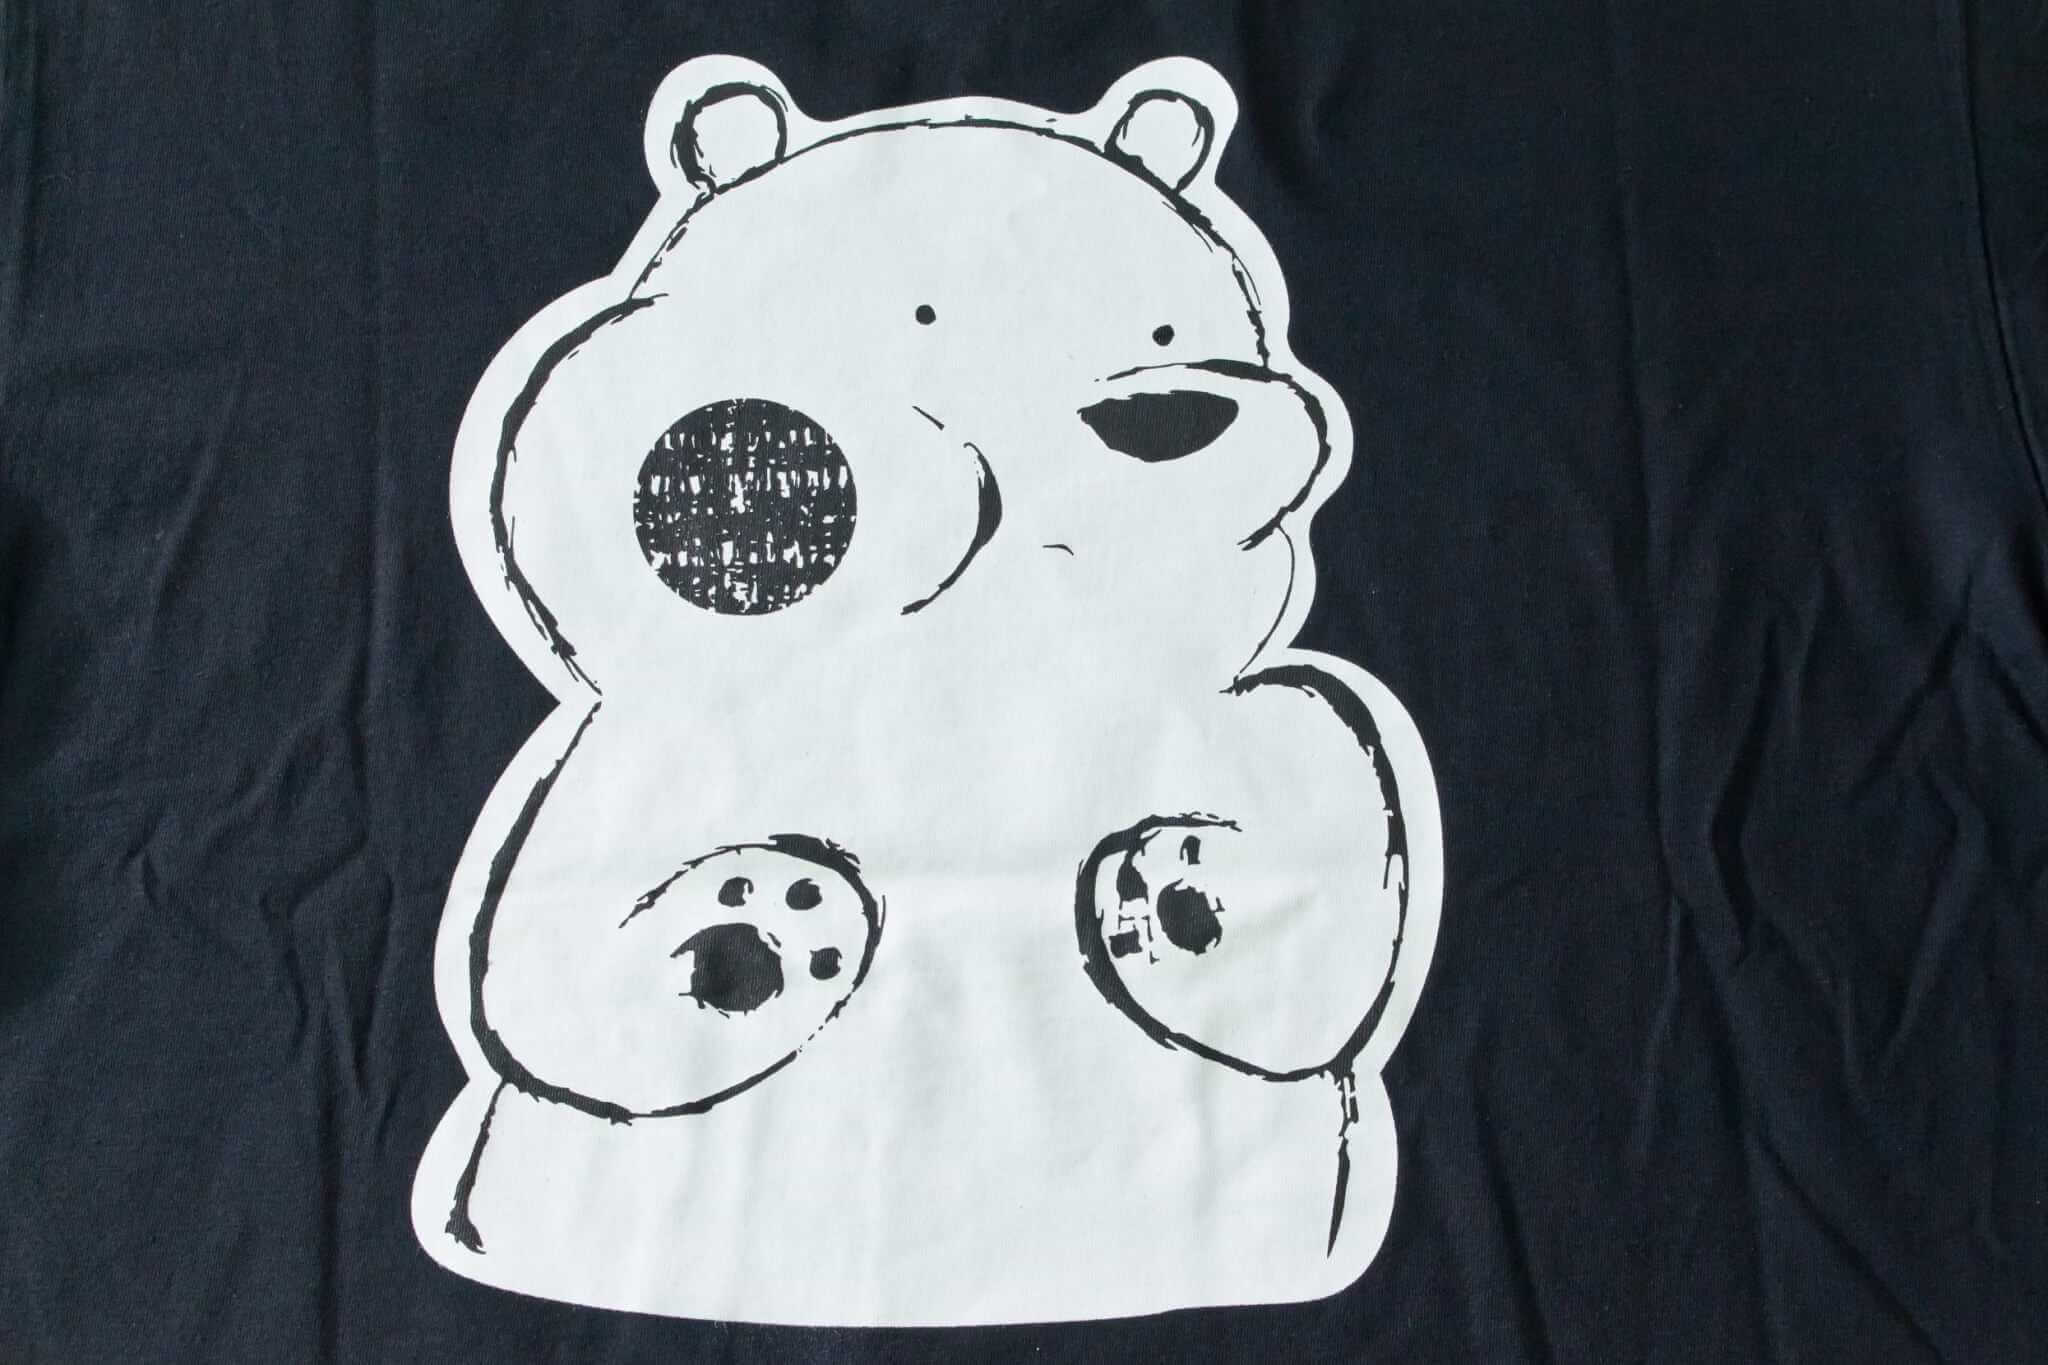 客製化T恤-可愛熊熊 客製T恤的第4張圖(客製化公司制服、班服製作、團體服製作等示意或作品圖)